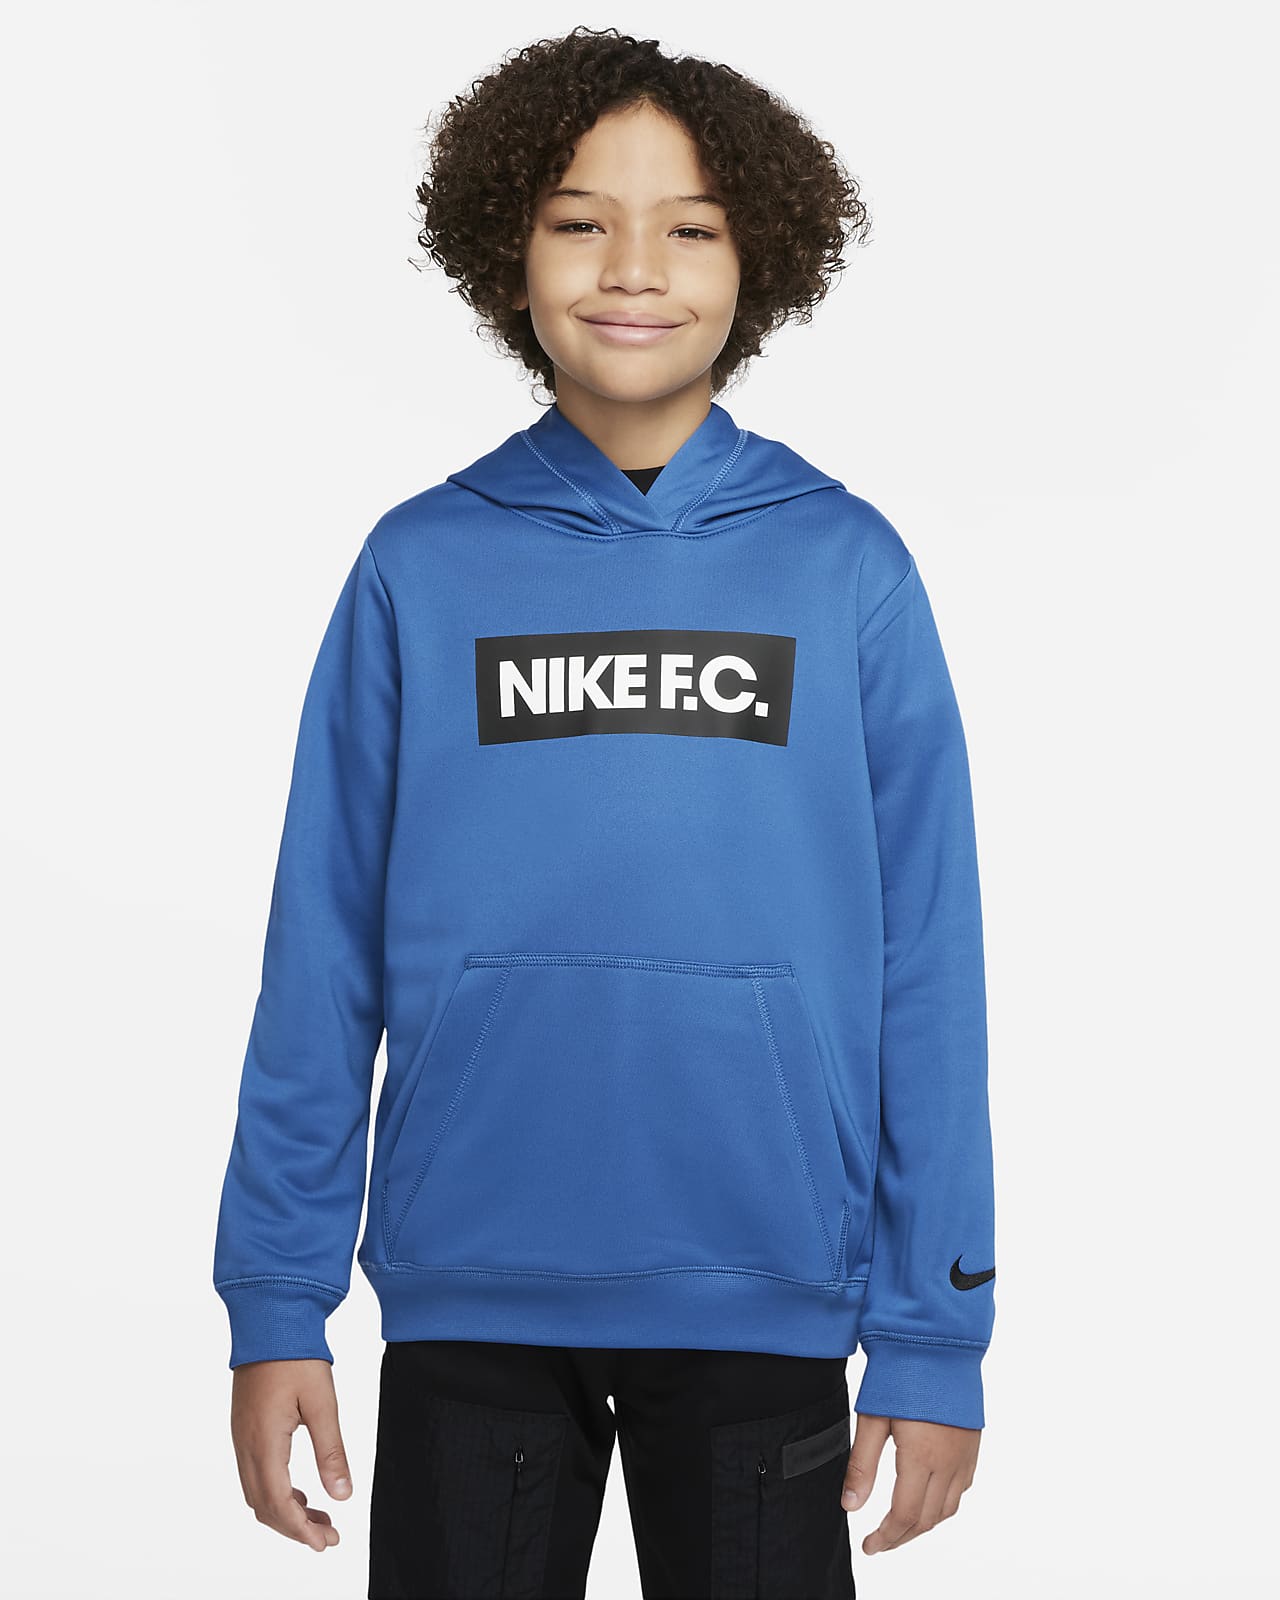 Fotbalová mikina Nike F.C. s kapucí pro větší děti